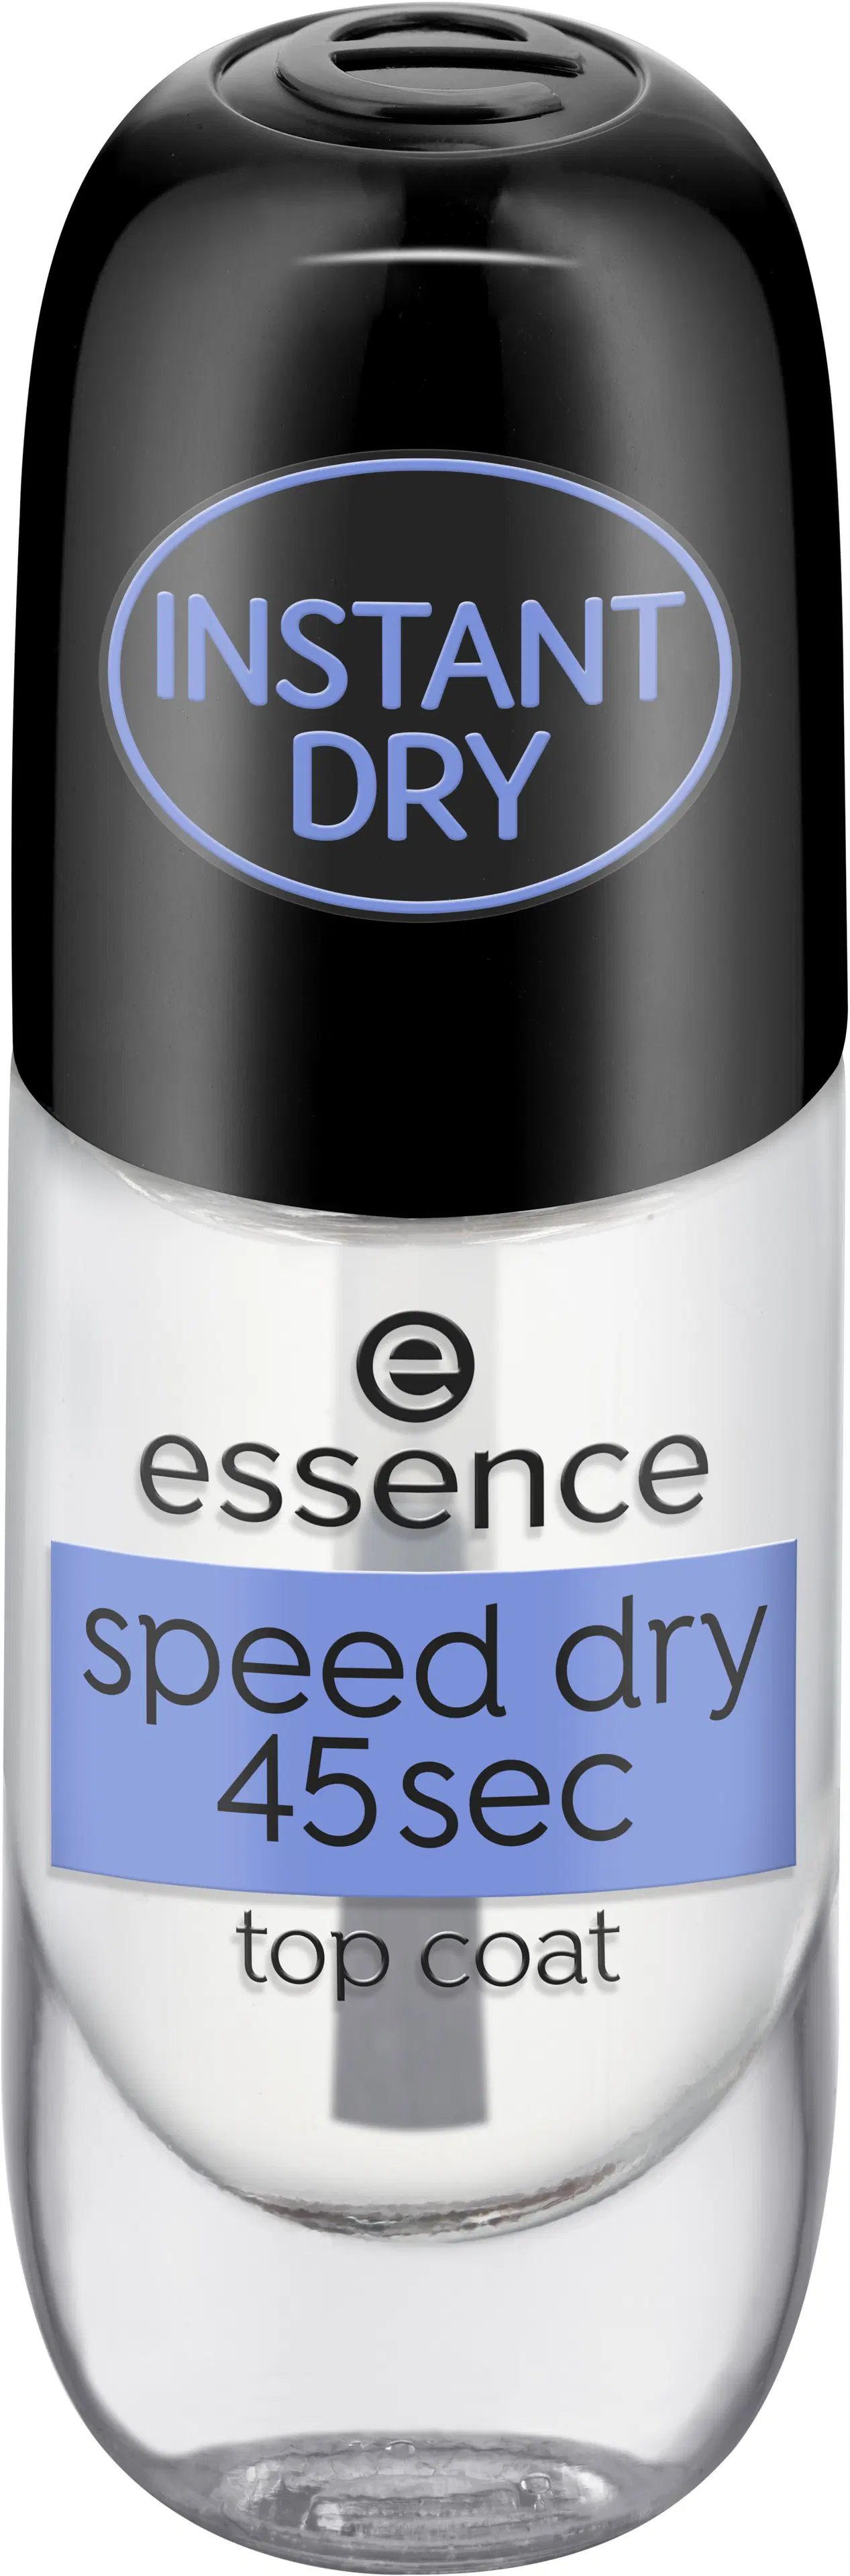 essence speed dry 45sec top coat päällyslakka 8 ml